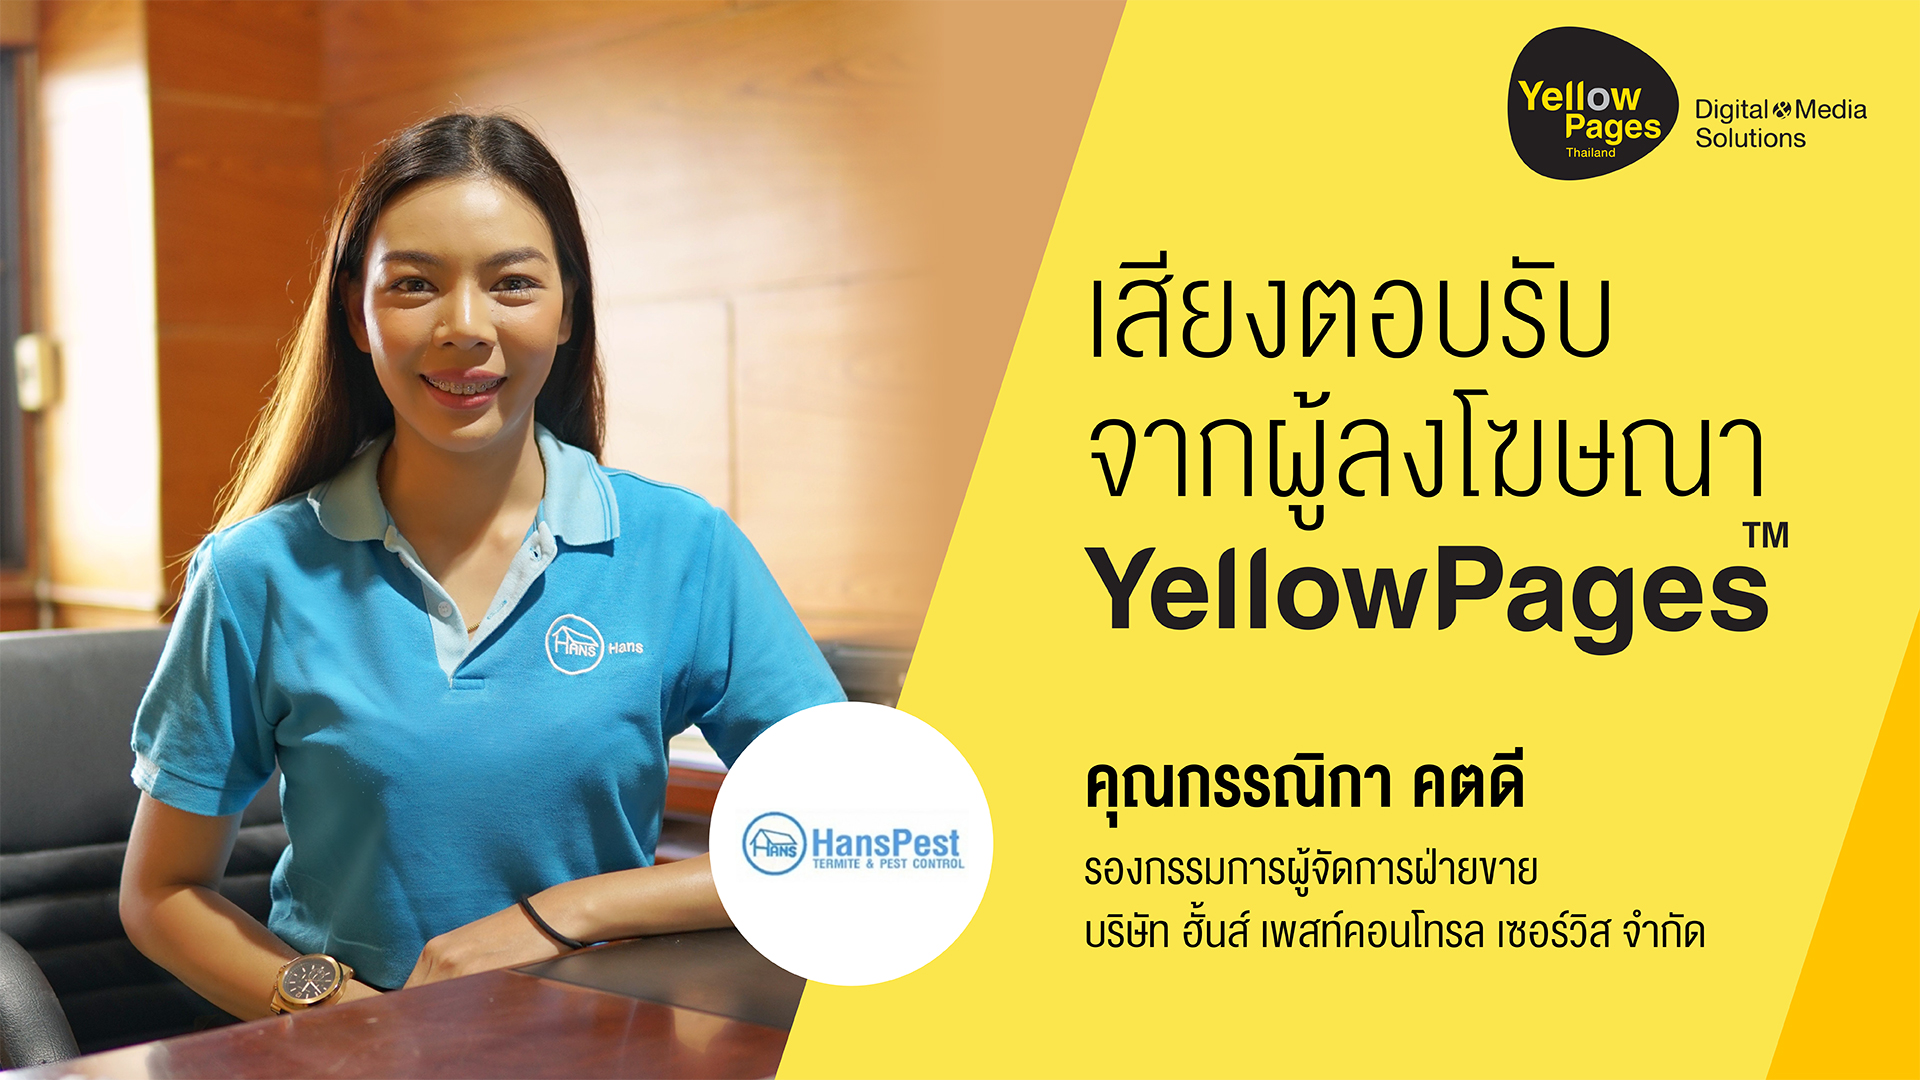 คุณกรรณิกา คตดี บริษัท แอดวานซ์ เทค โพรดักท์ จำกัด - ลงโฆษณา Thailand YellowPages